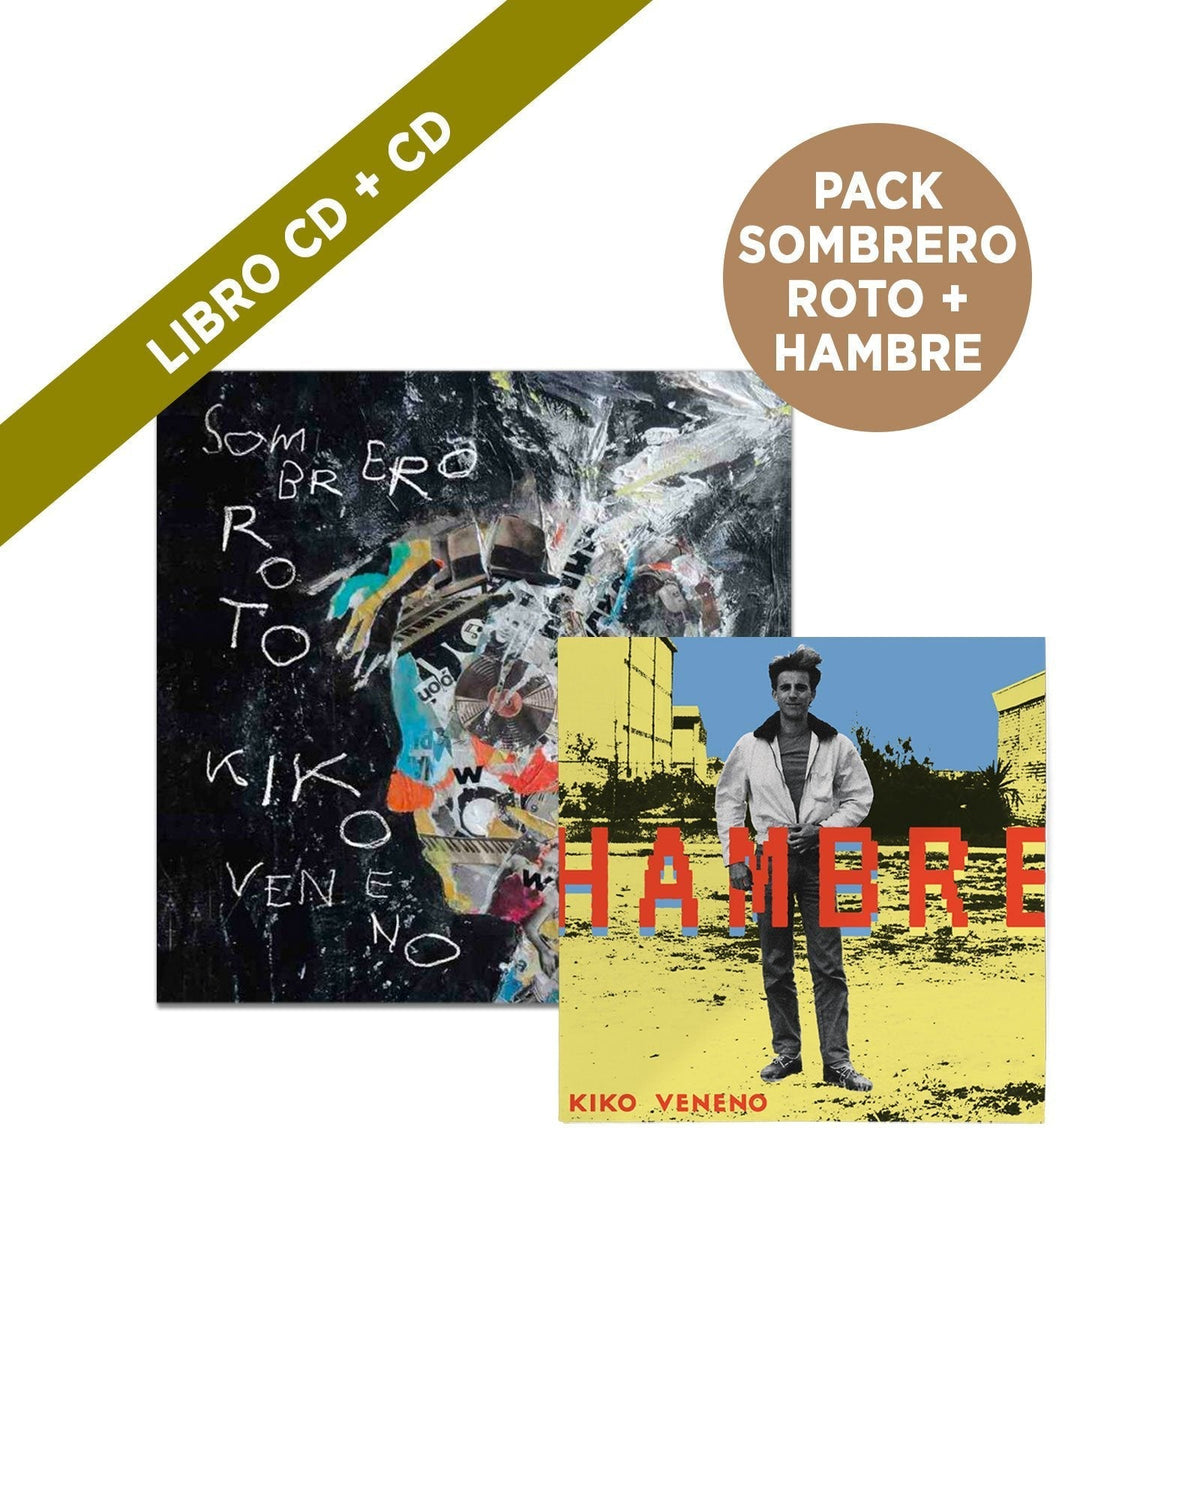 Kiko Veneno - CD "Hambre" + Libro CD "Sombrero Roto"" - D2fy · Rocktud - Kiko Veneno